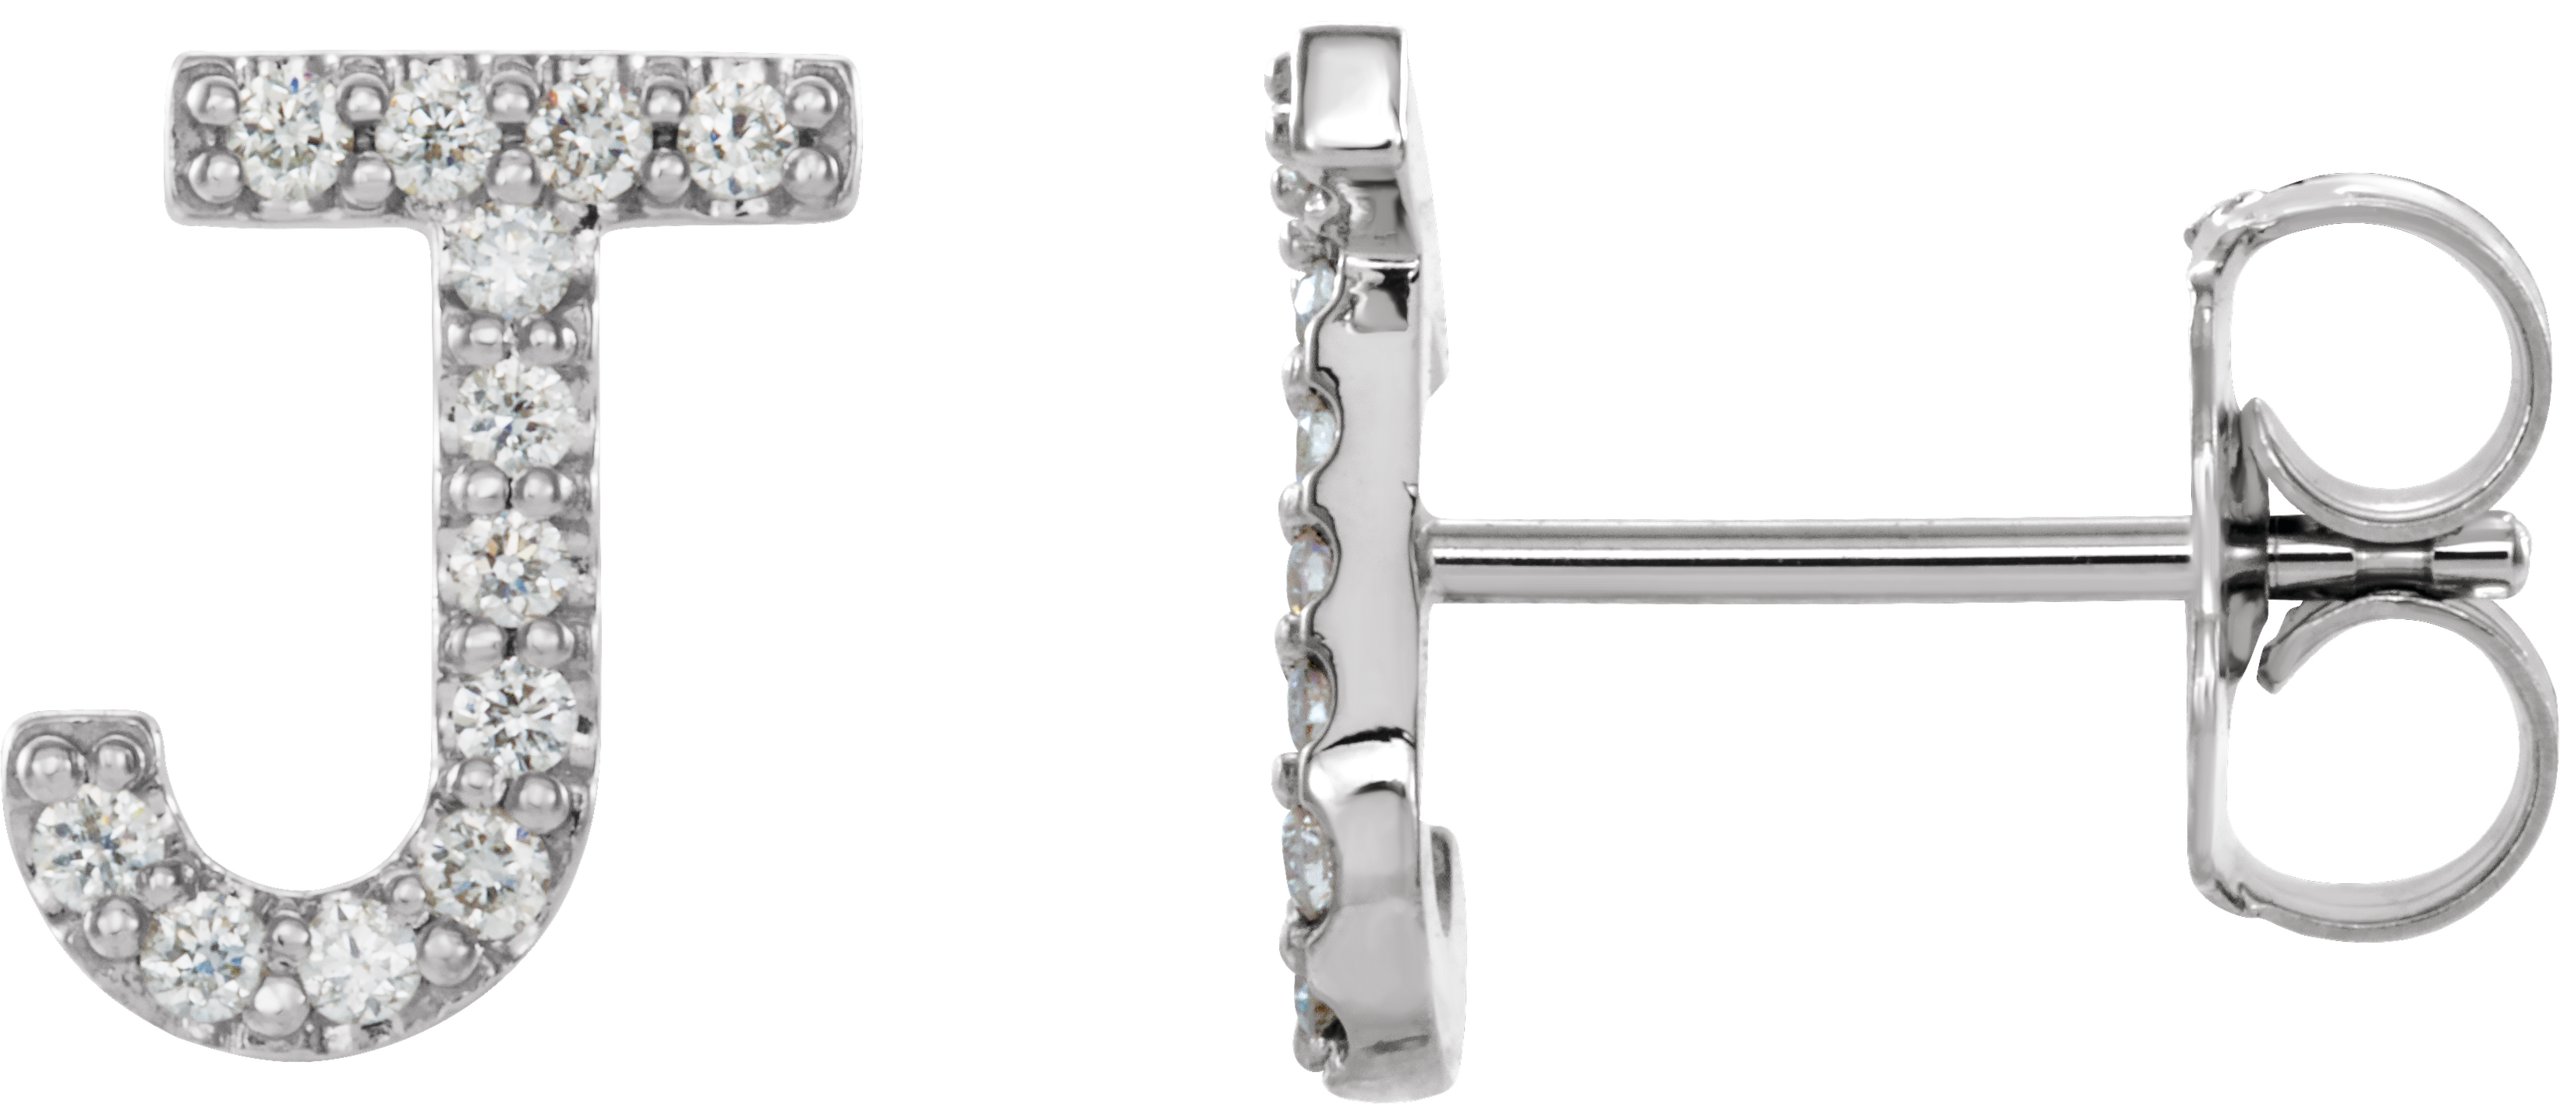 Platinum 1/10 CTW Natural Diamond Initial J Earrings